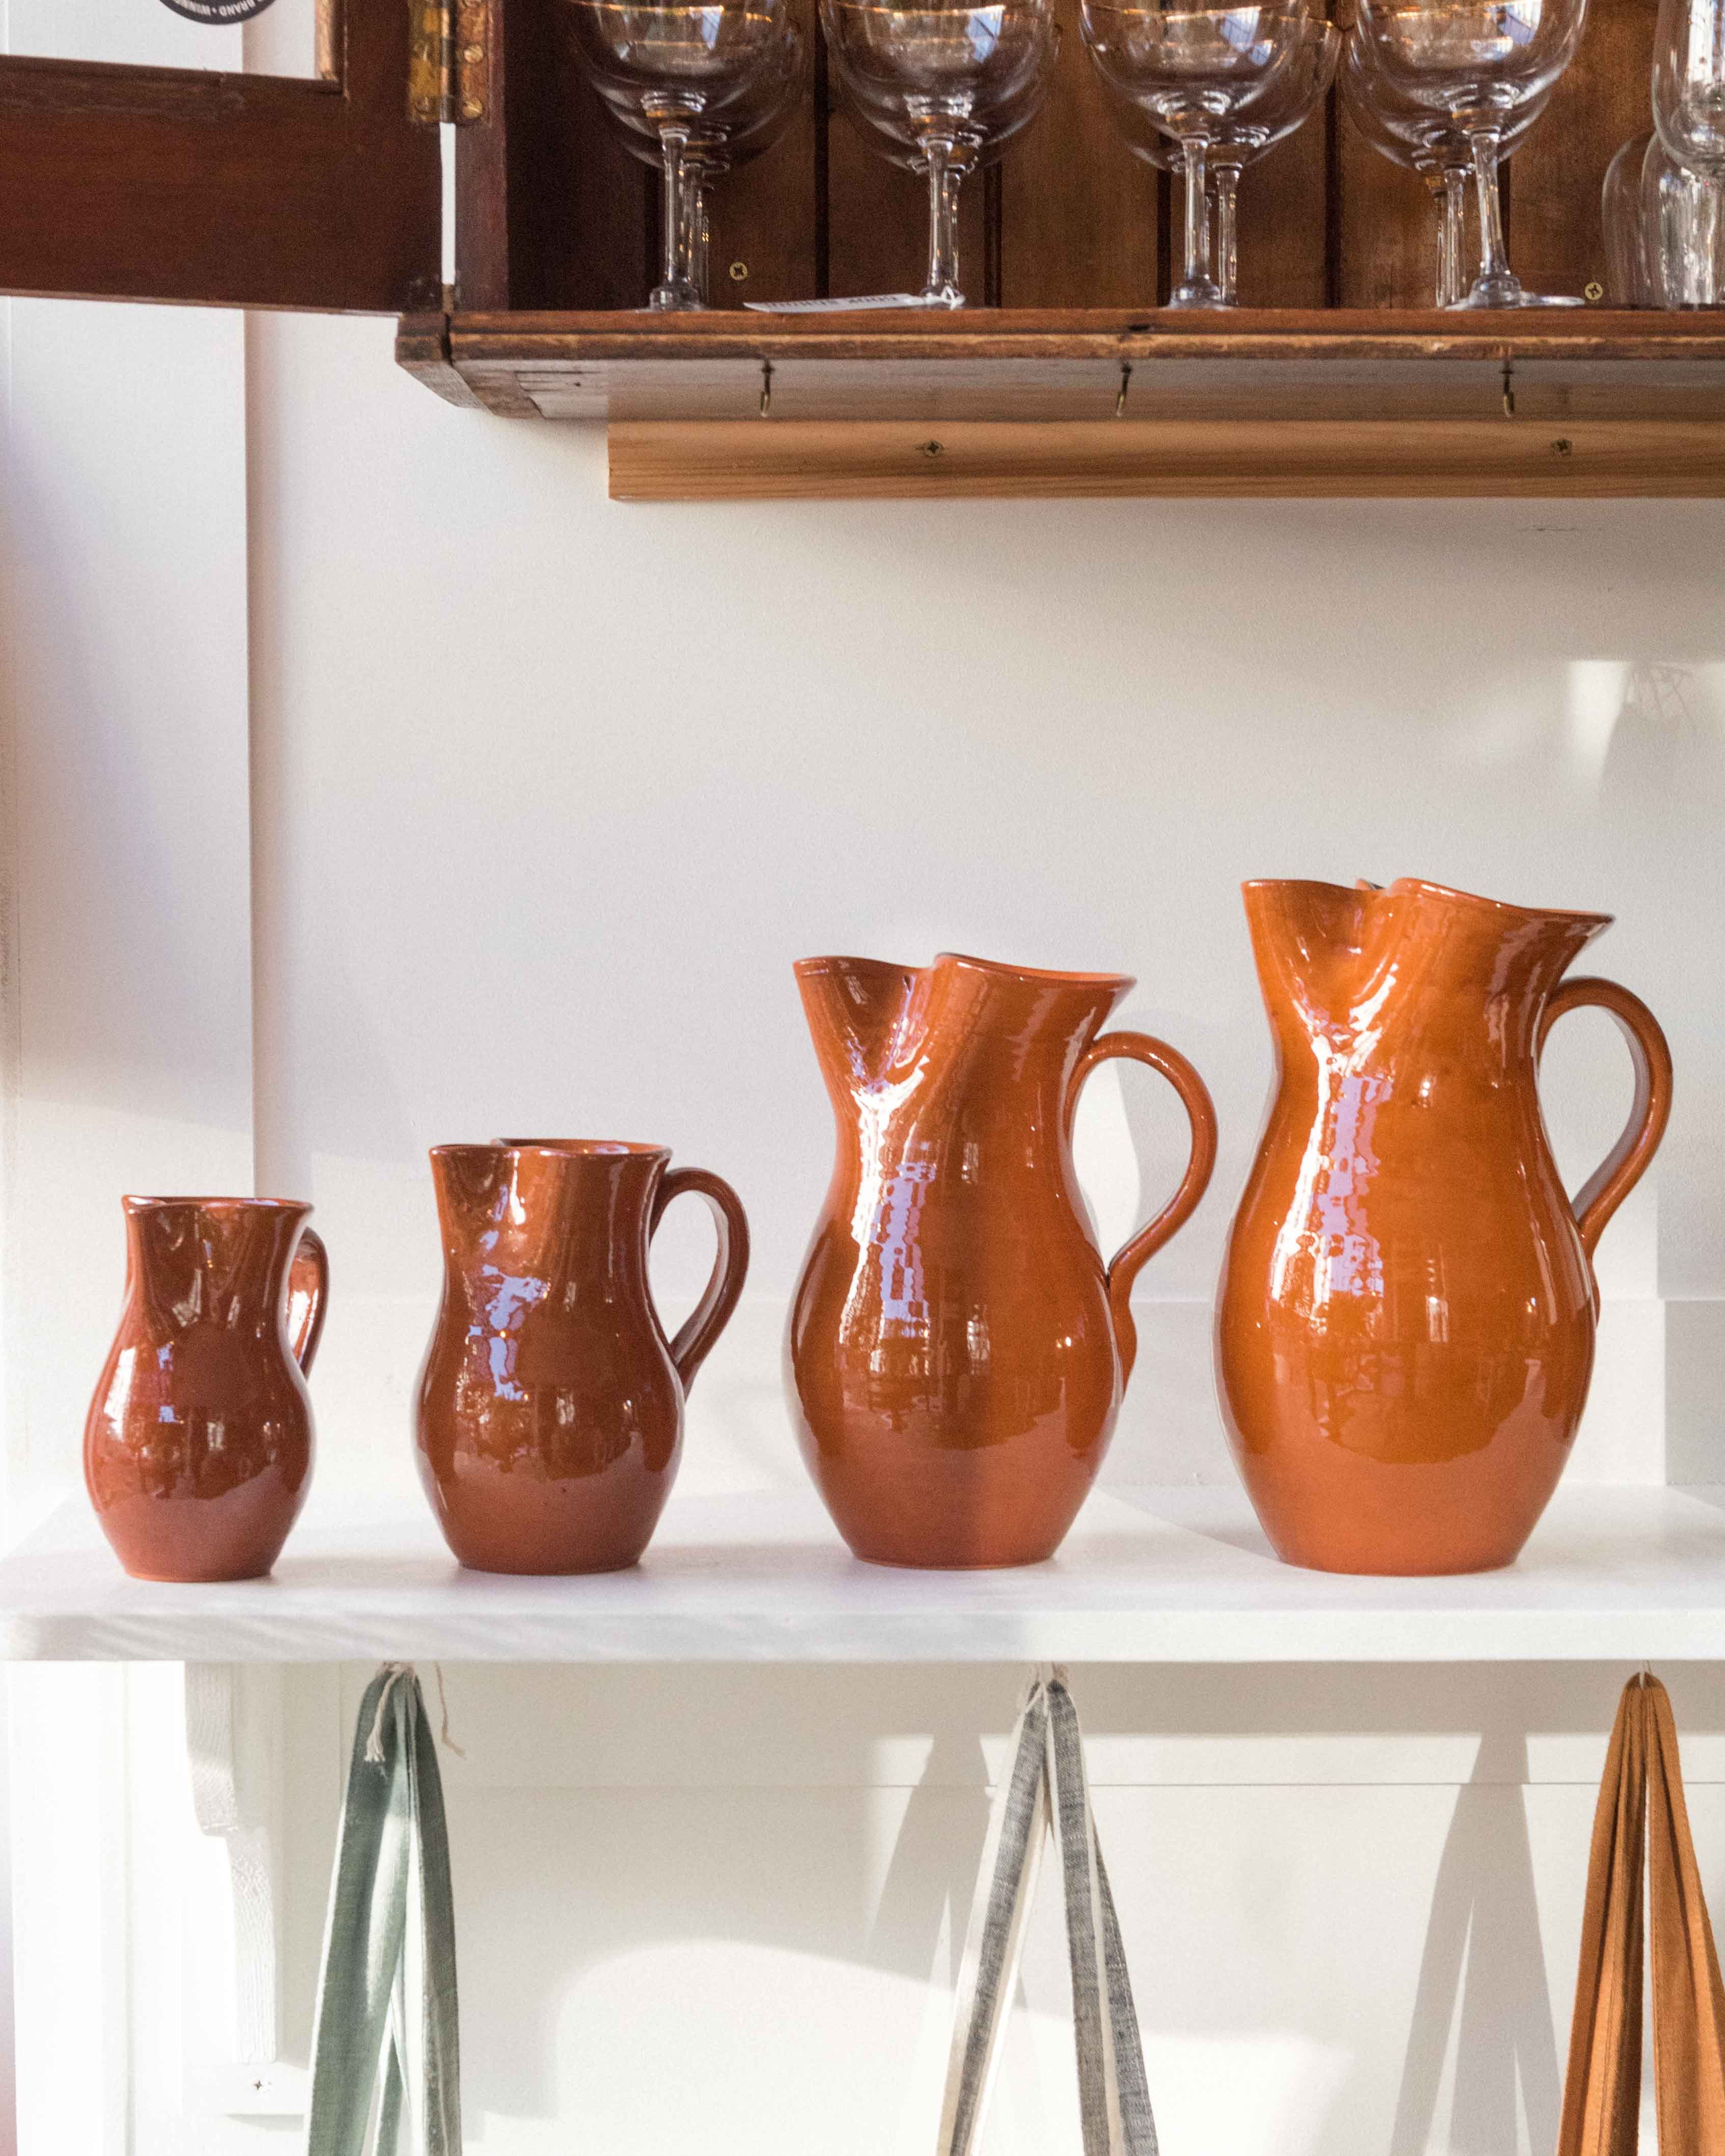 Terracotta jugs